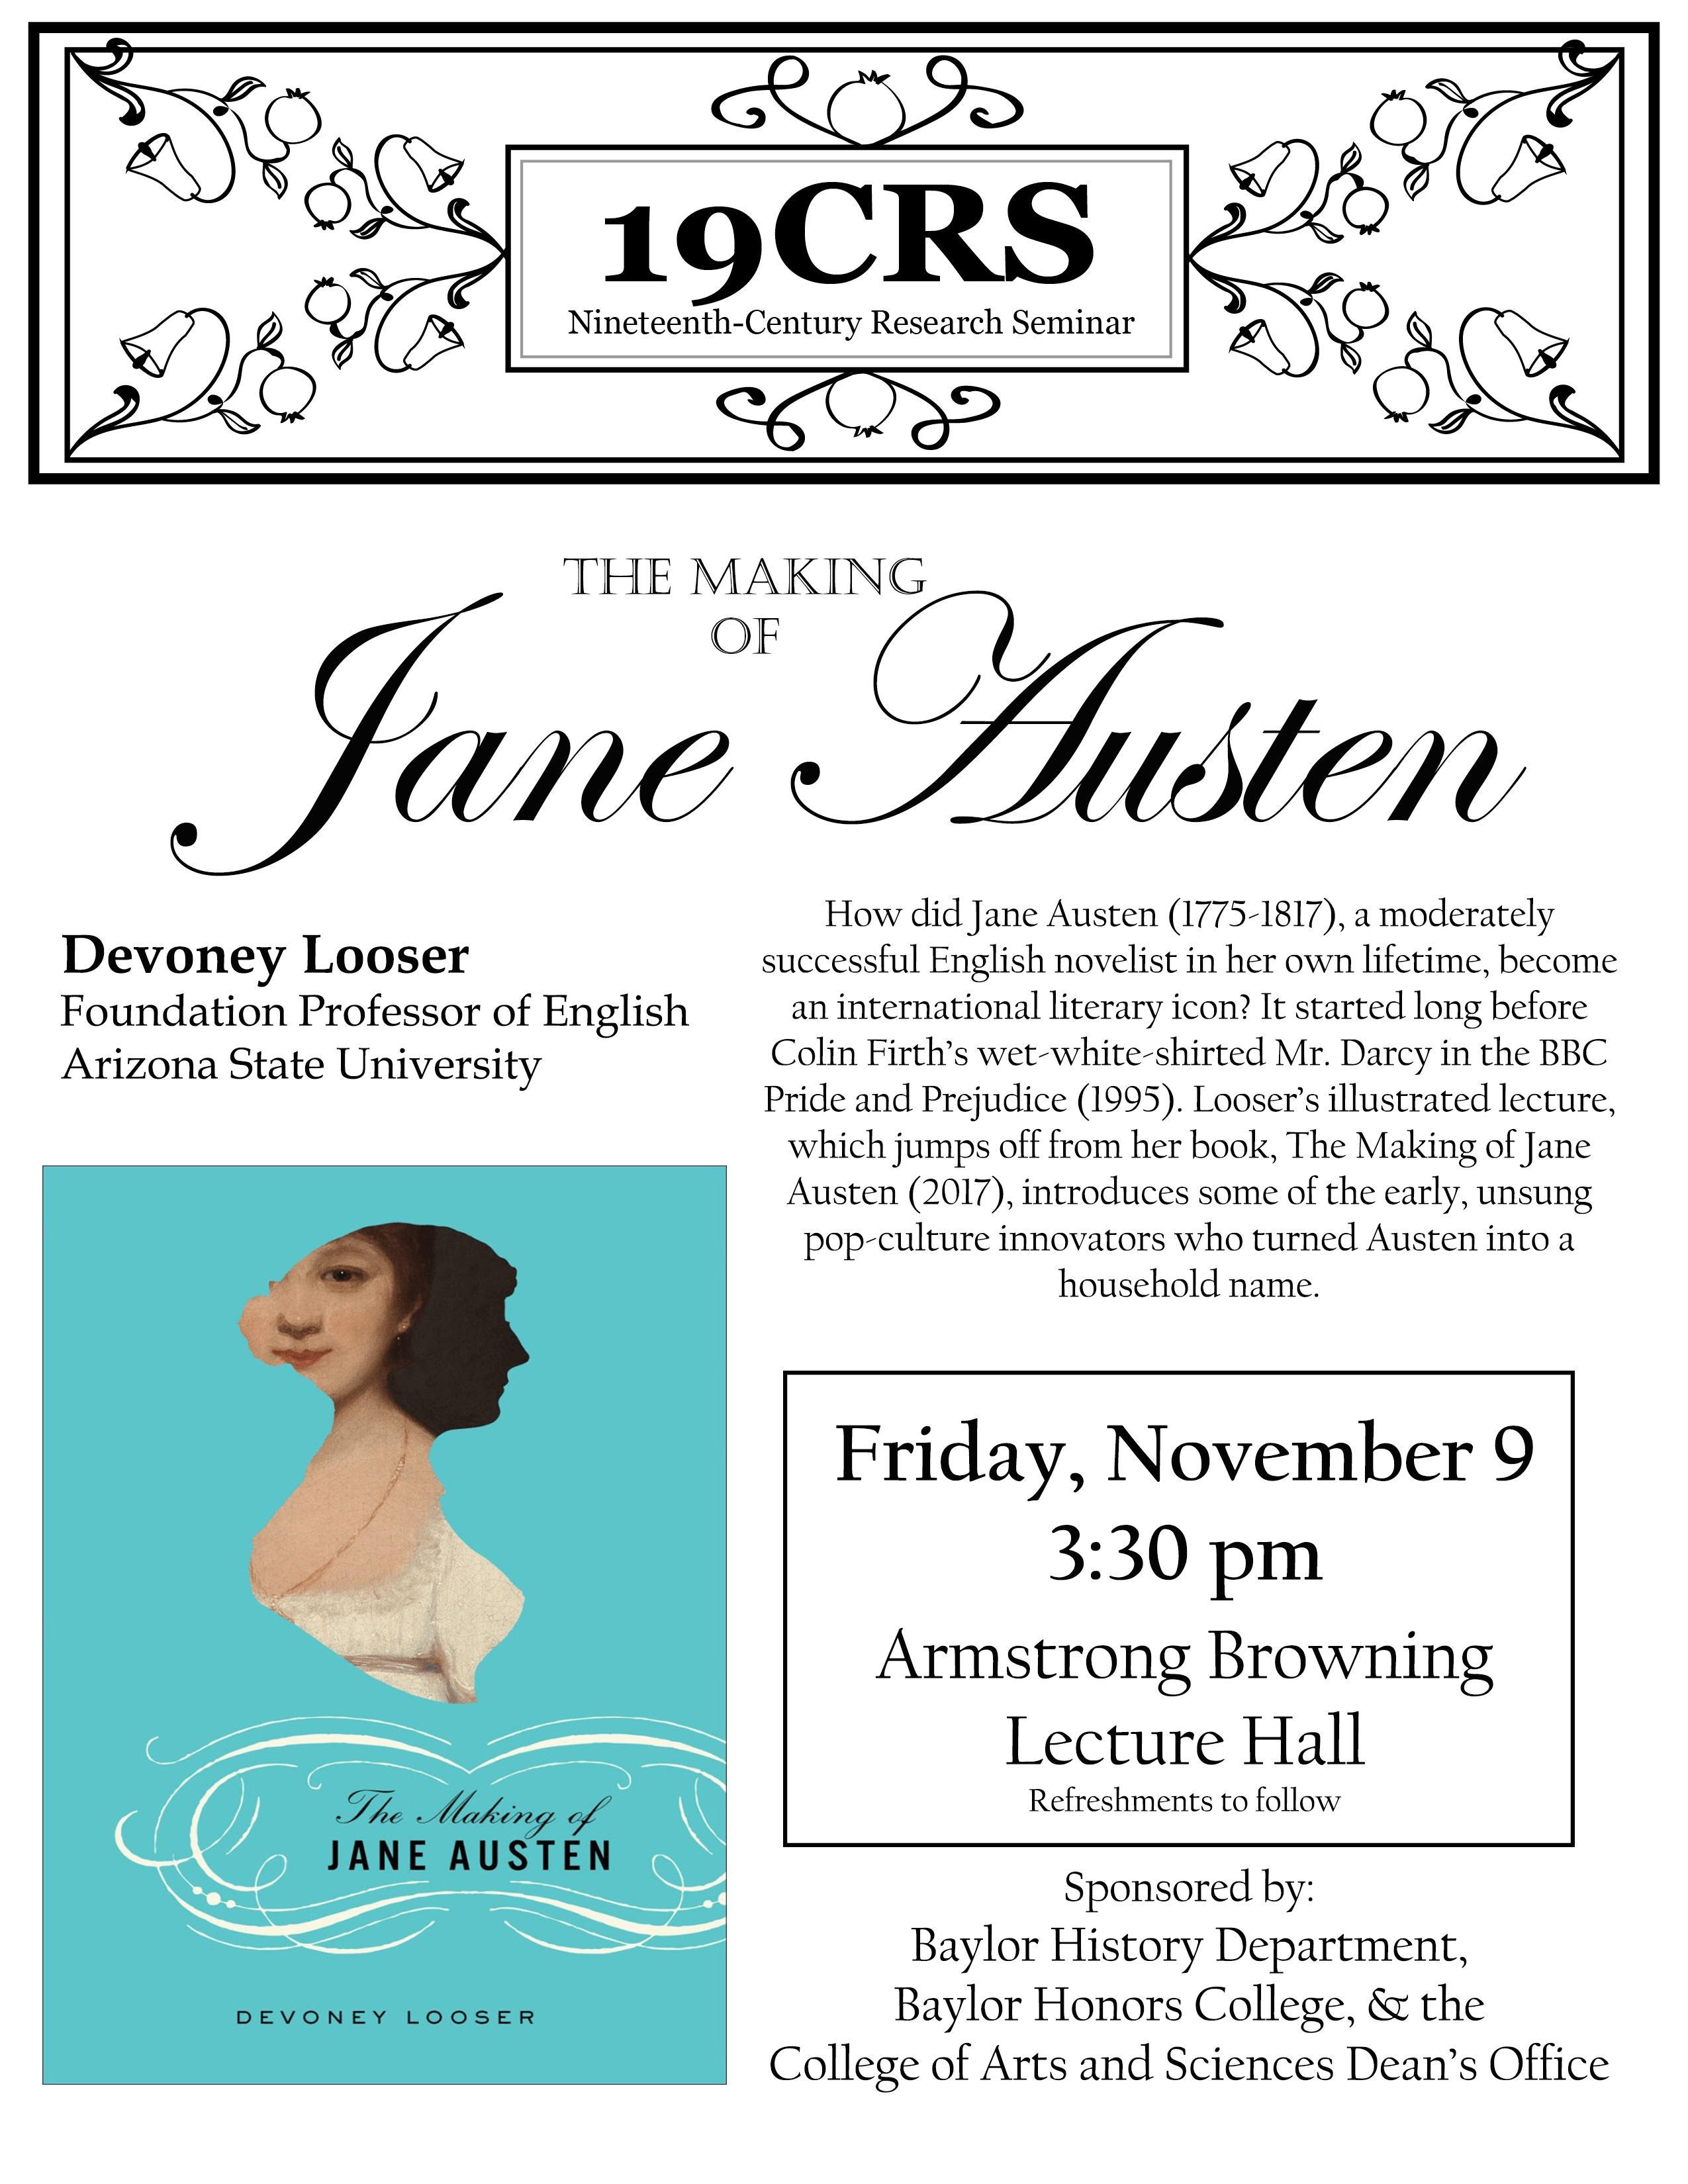 Flyer for Devoney Looser's talk, "The Making of Jane Austen" 